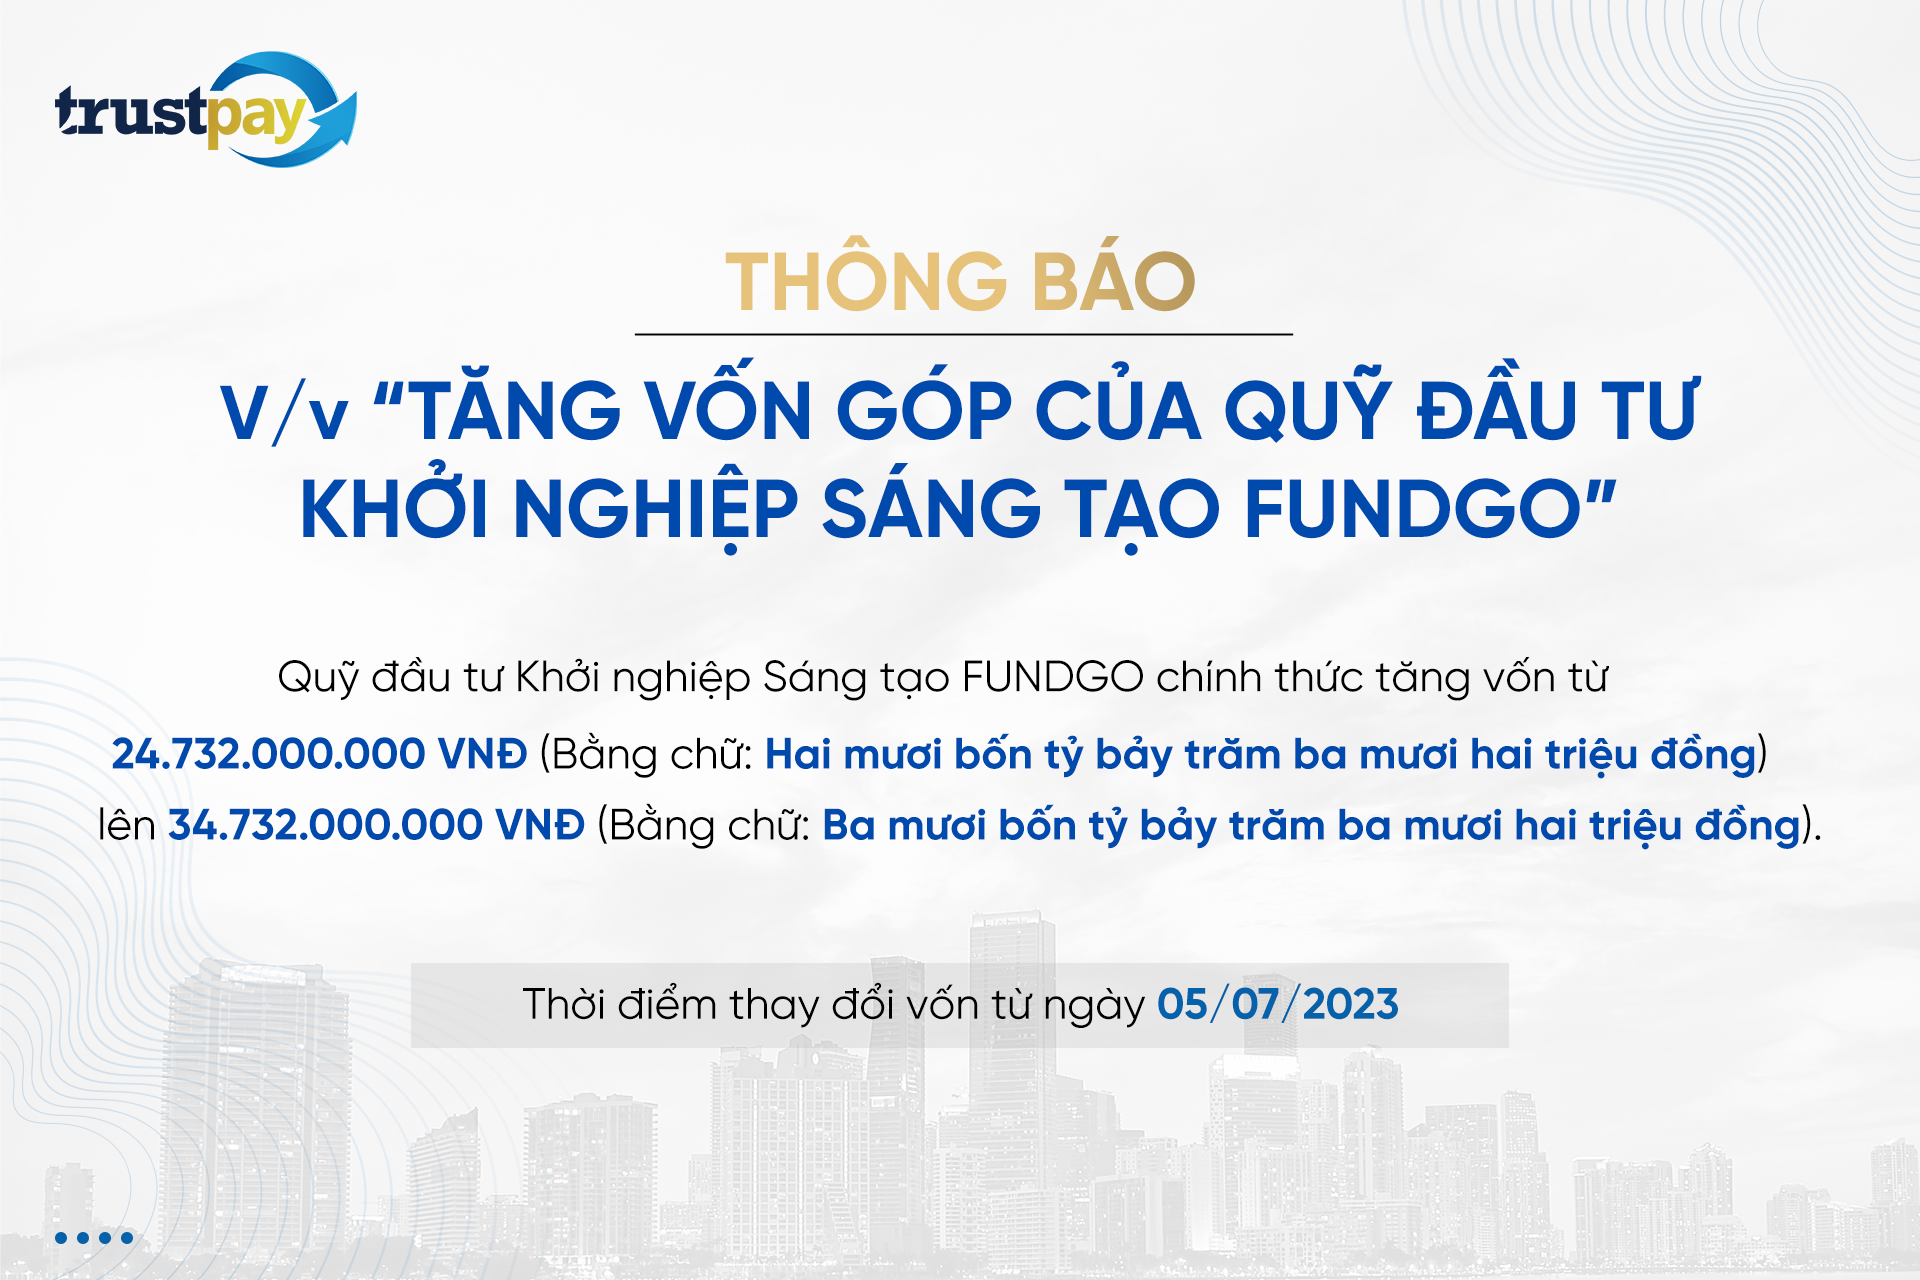 THONG-BAO-GIA-TANG-VON-PAGE-TRUSTPAT